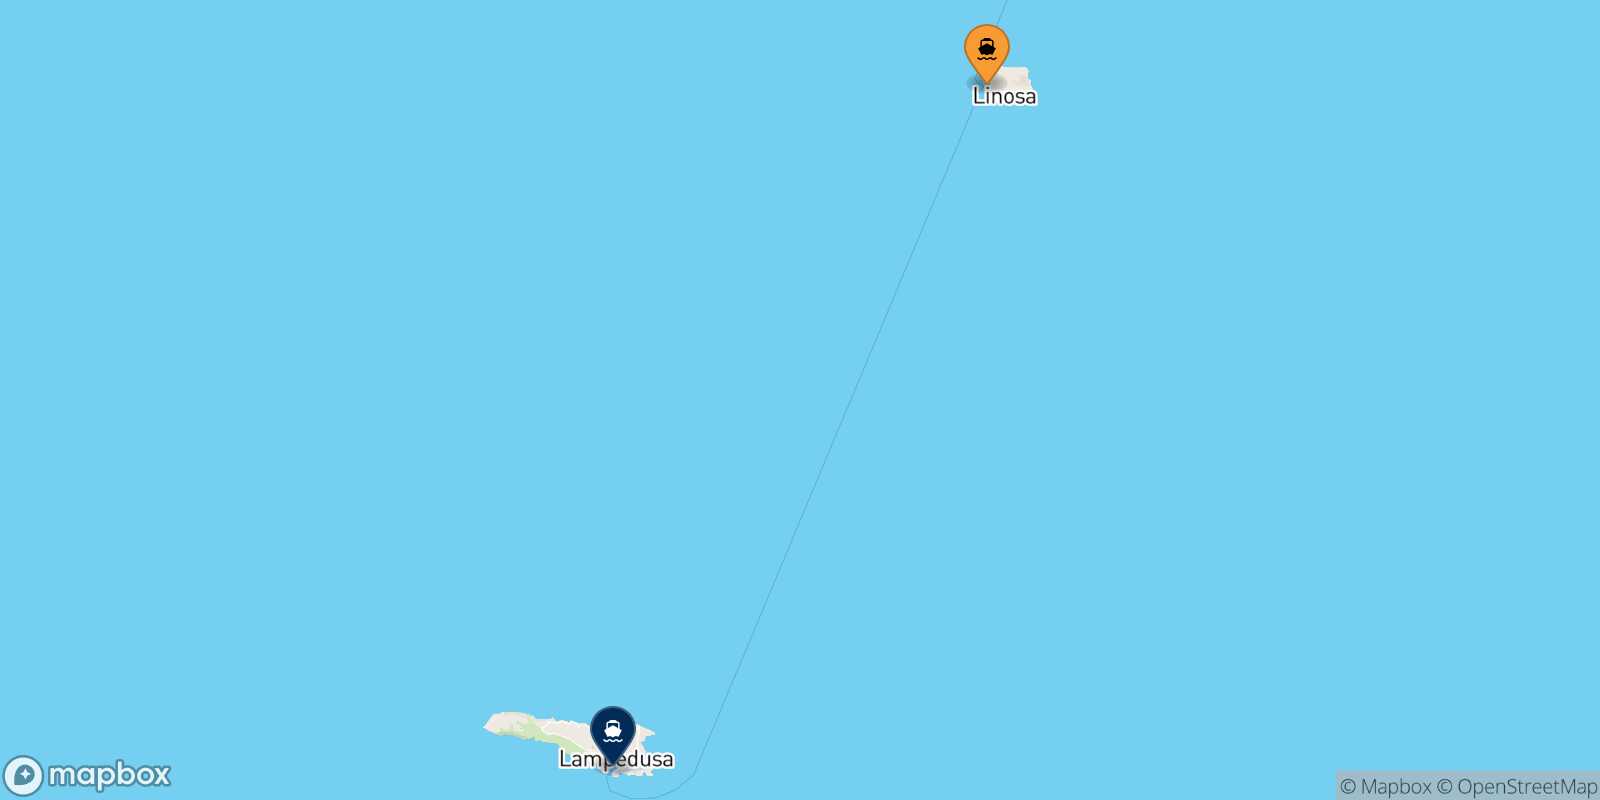 Mapa de la ruta Linosa Lampedusa